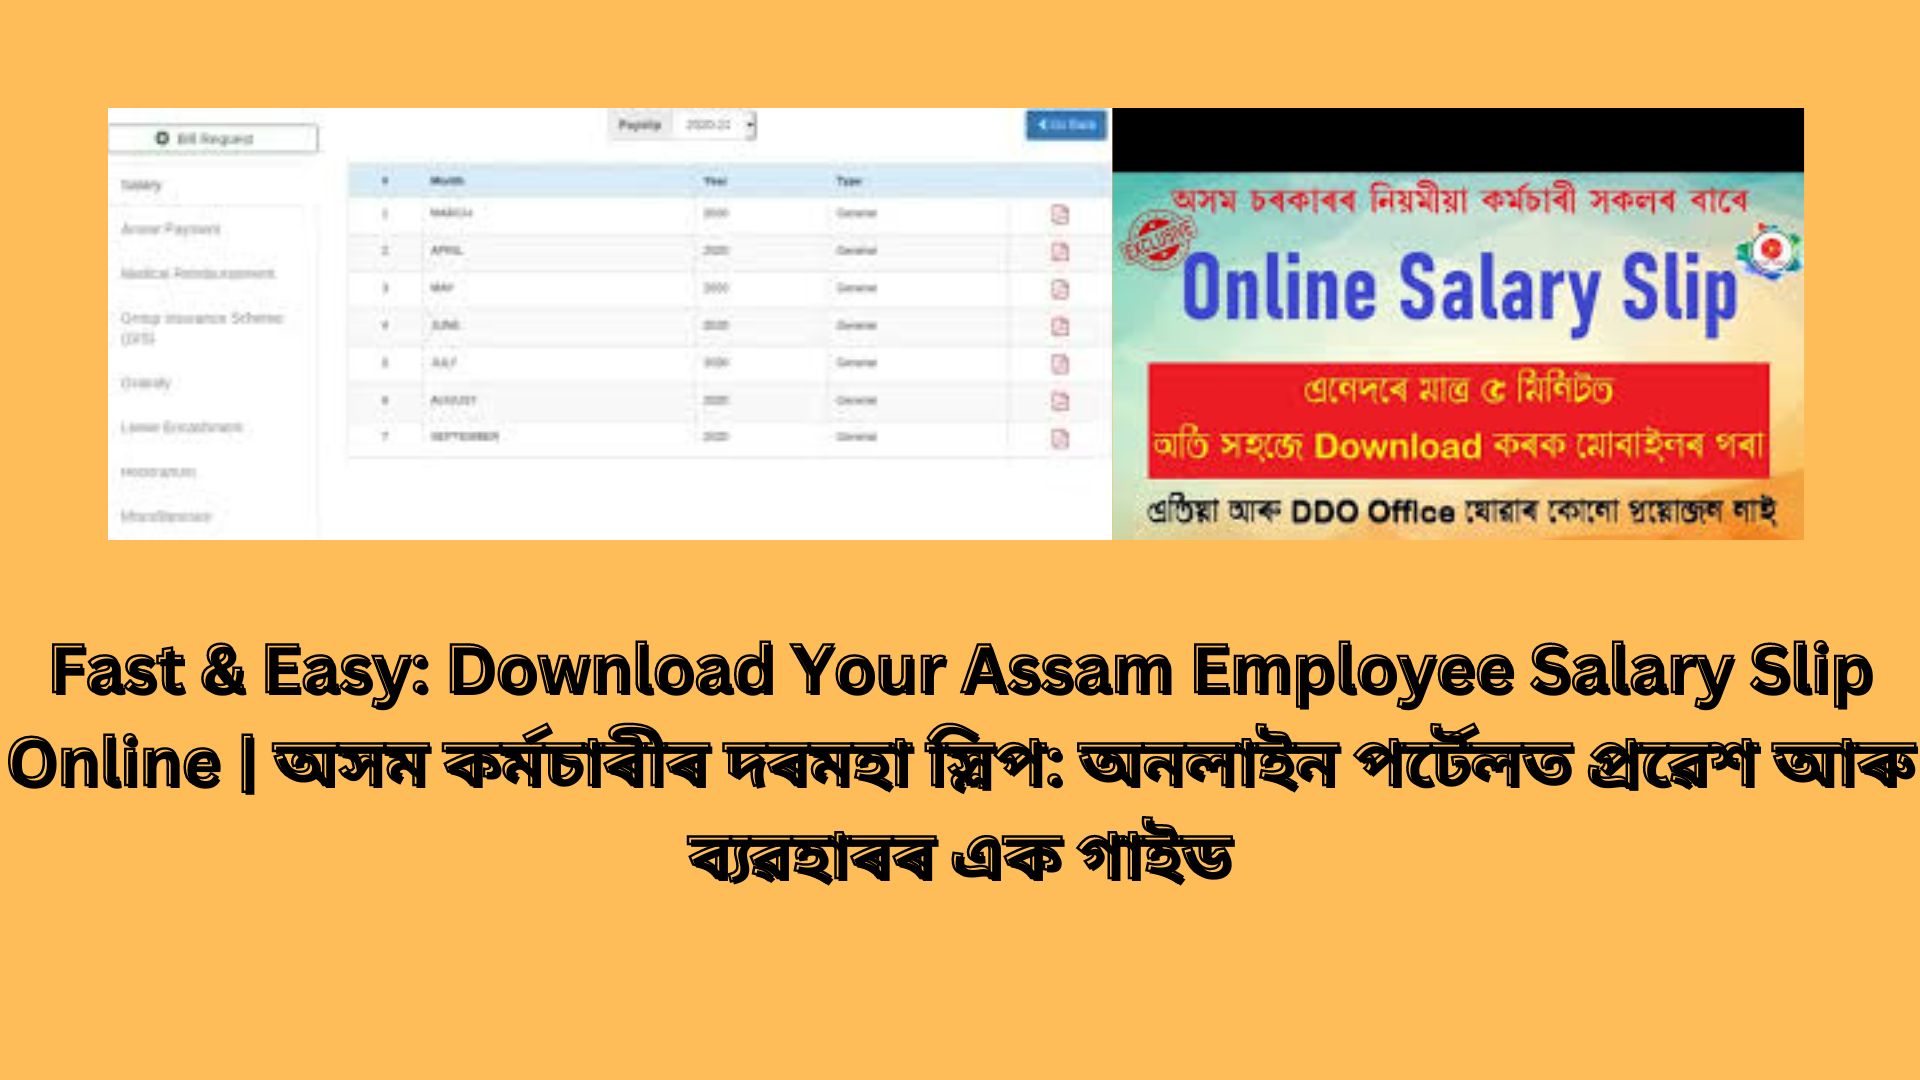 Fast & Easy: Download Your Assam Employee Salary Slip Online | অসম কৰ্মচাৰীৰ দৰমহা স্লিপ: অনলাইন পৰ্টেলত প্ৰৱেশ আৰু ব্যৱহাৰৰ এক গাইড